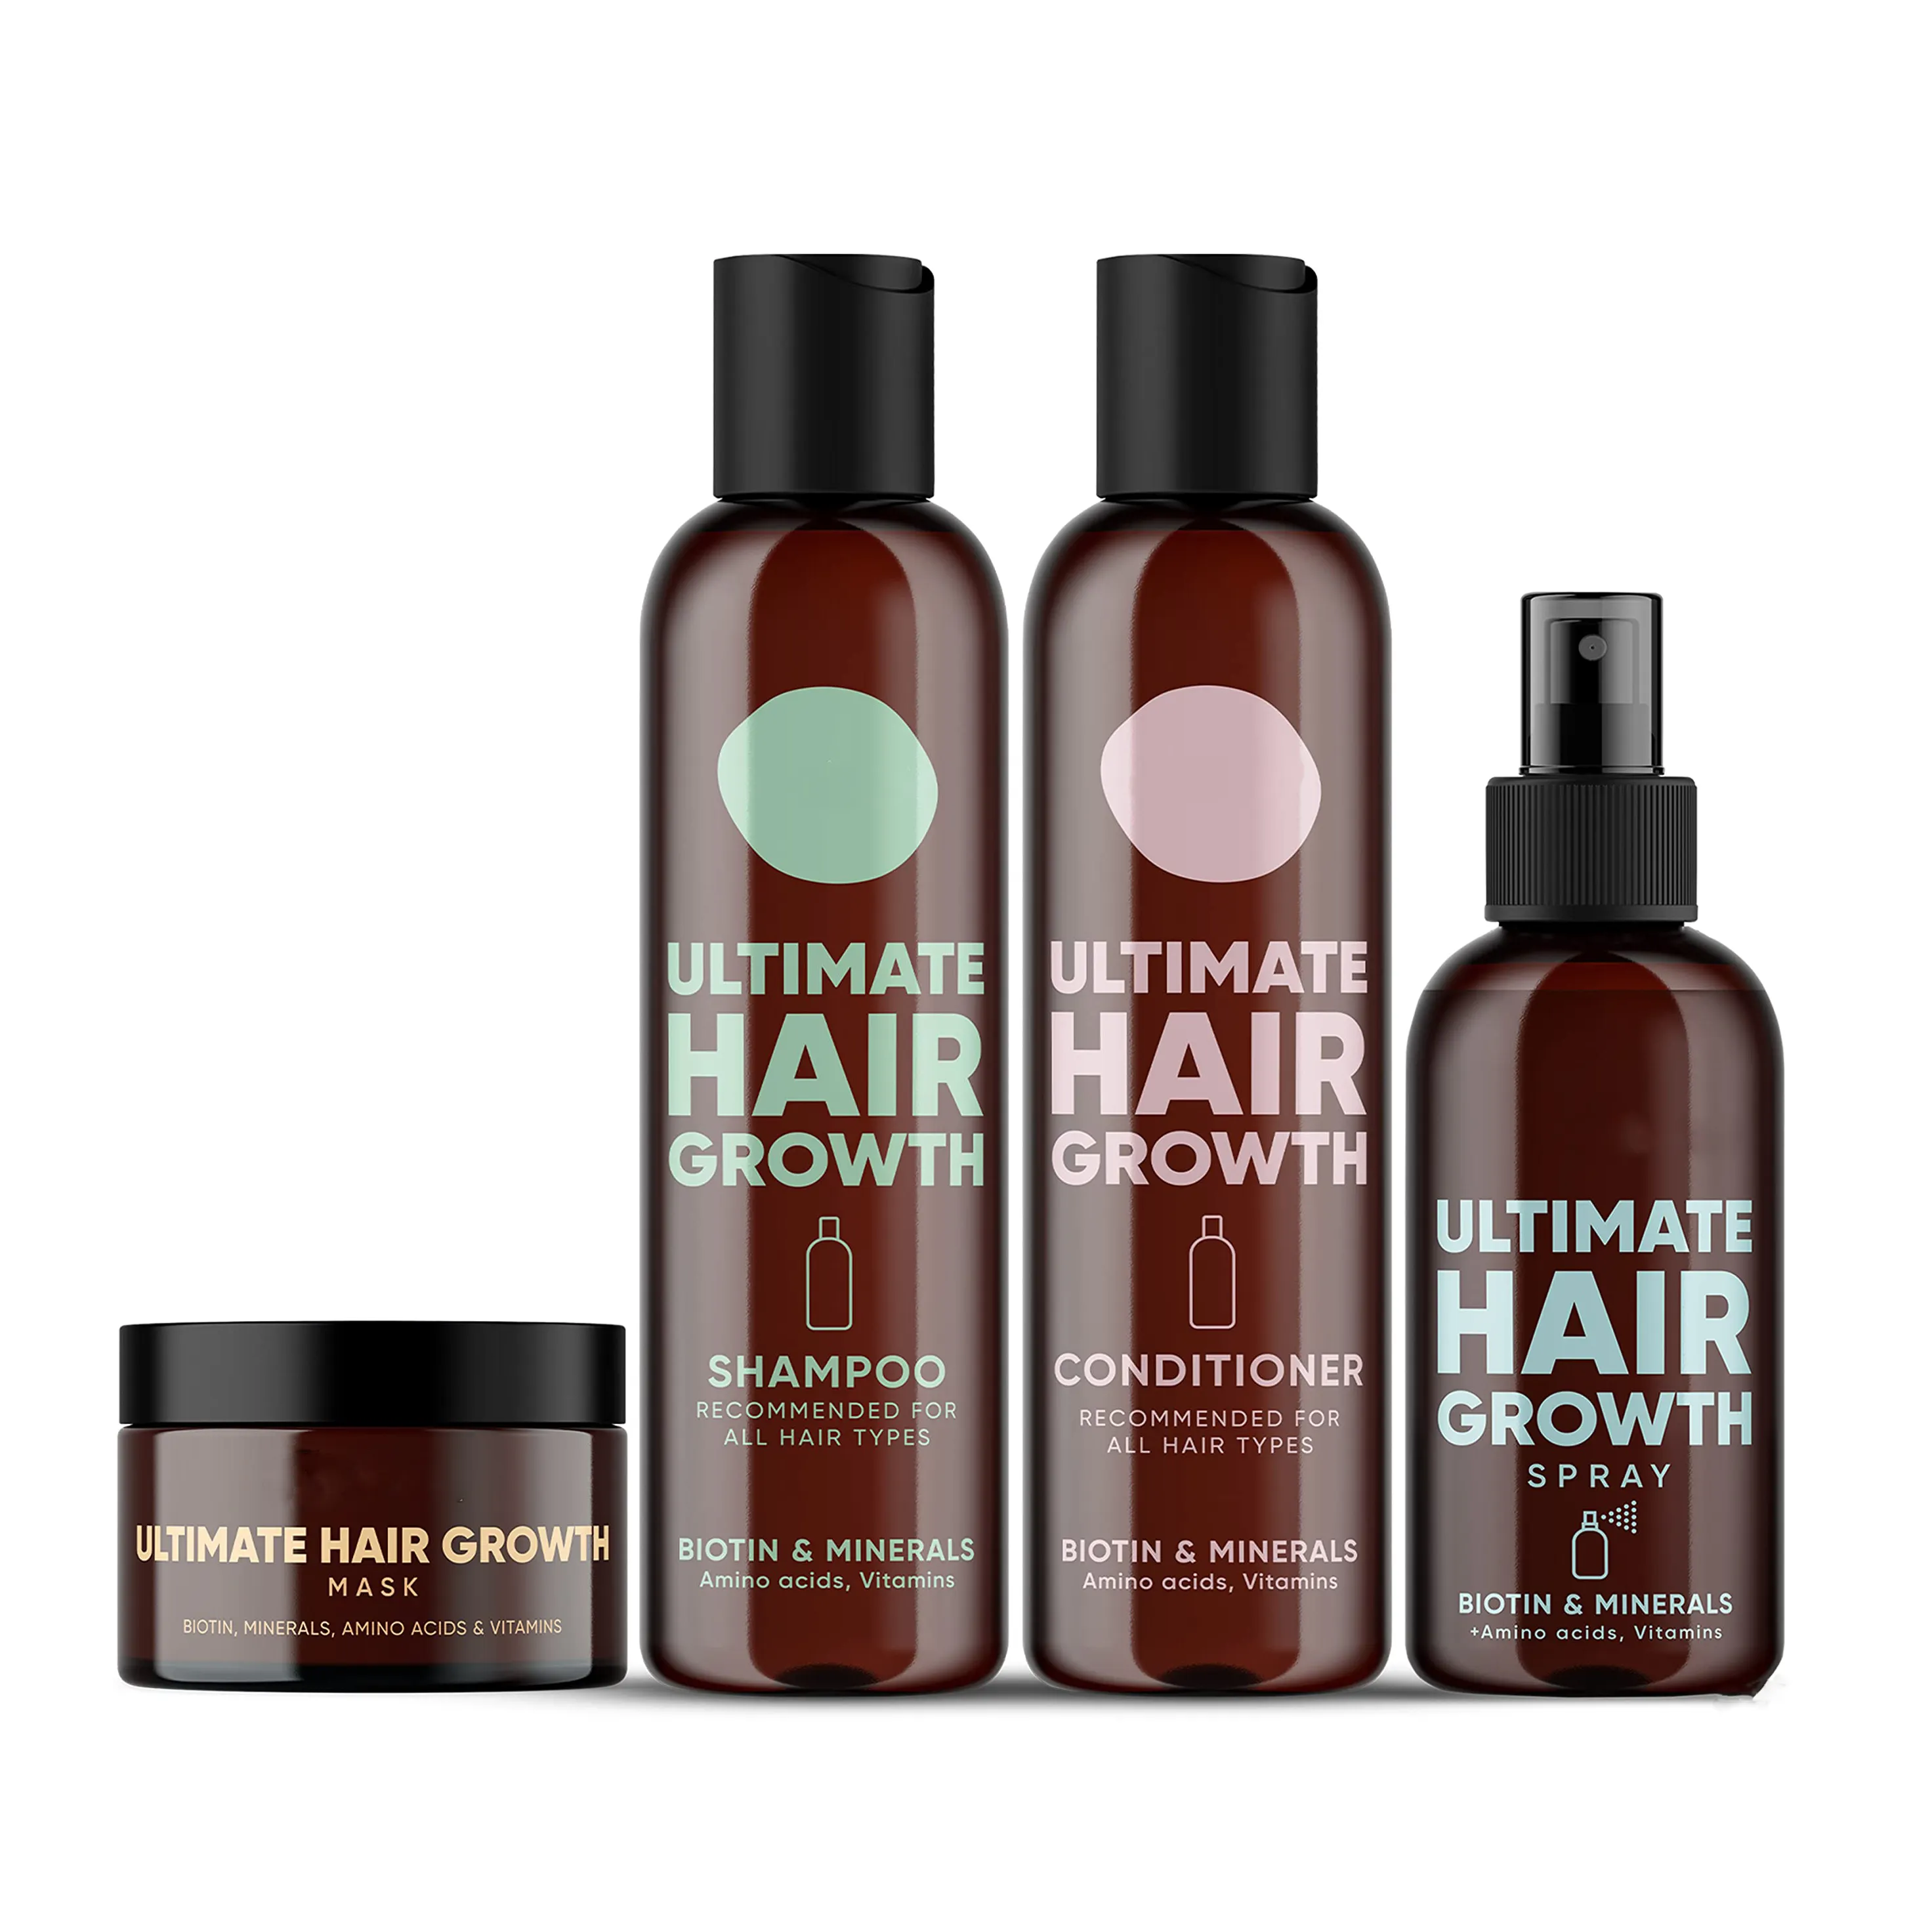 Nuovo balsamo per shampoo private label set maschera per capelli e spray per capelli naturale vegano olio di cocco per capelli e balsamo set